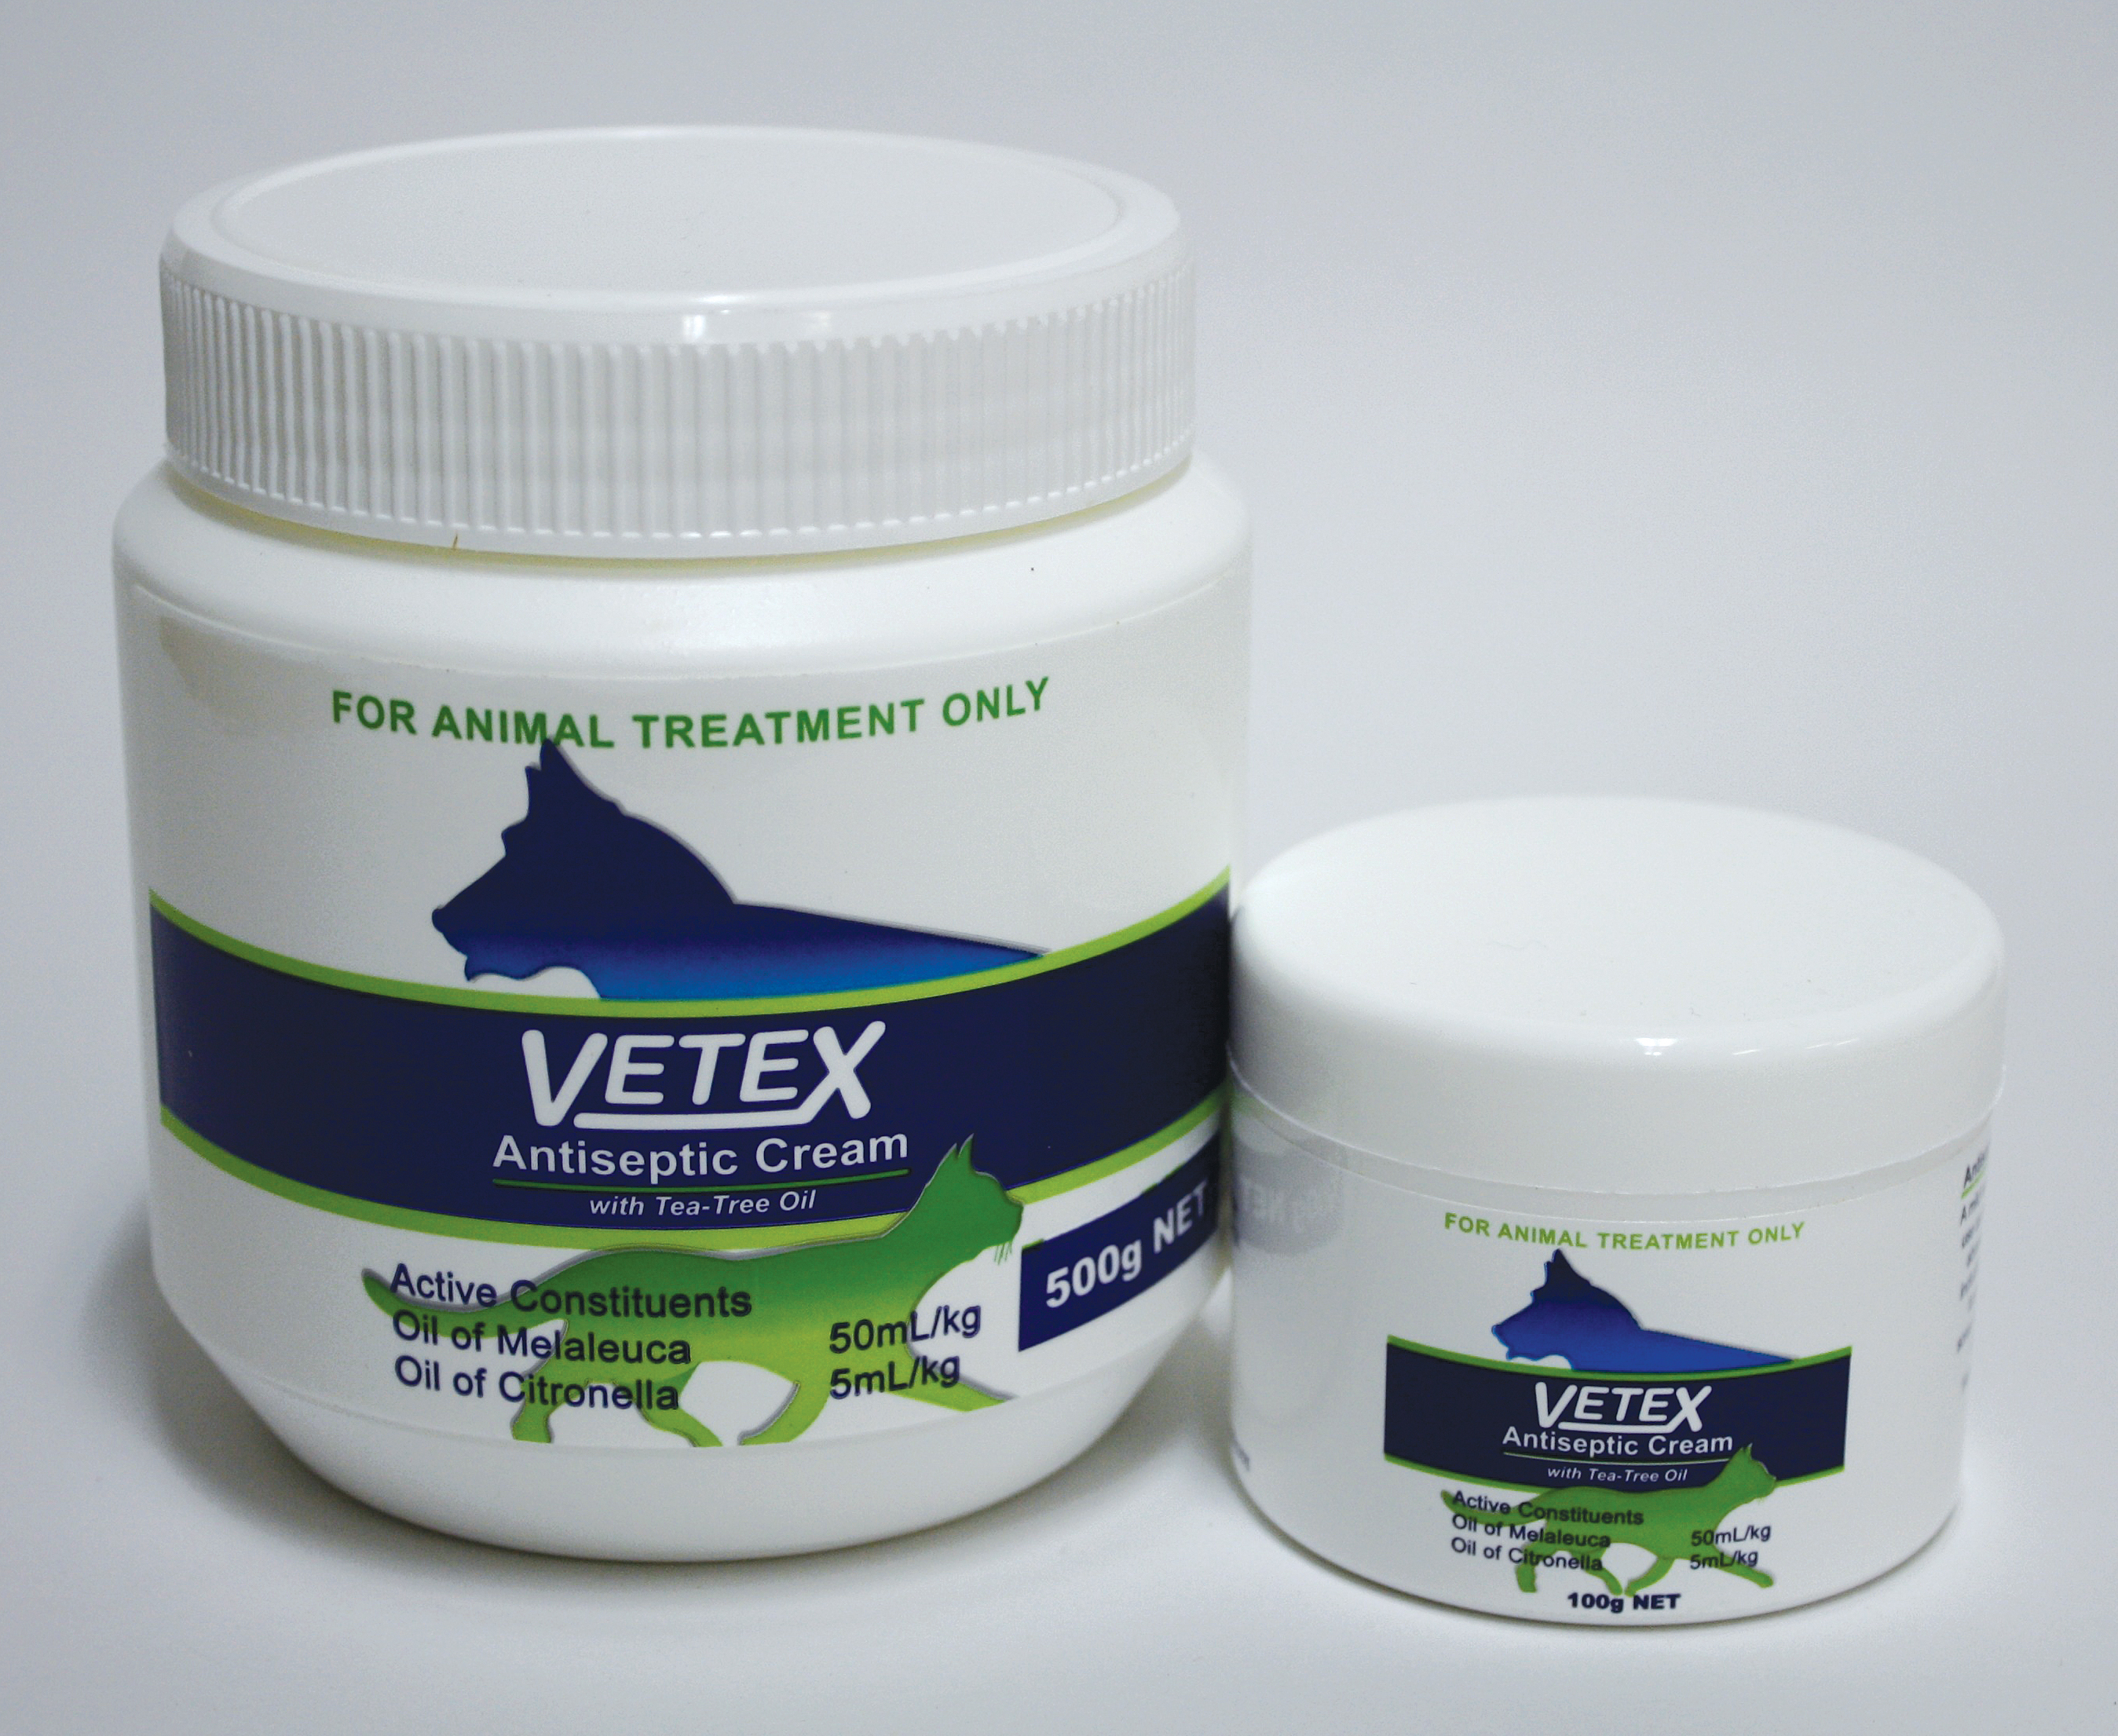 Vetex Antiseptic Cream 100g and 500g.